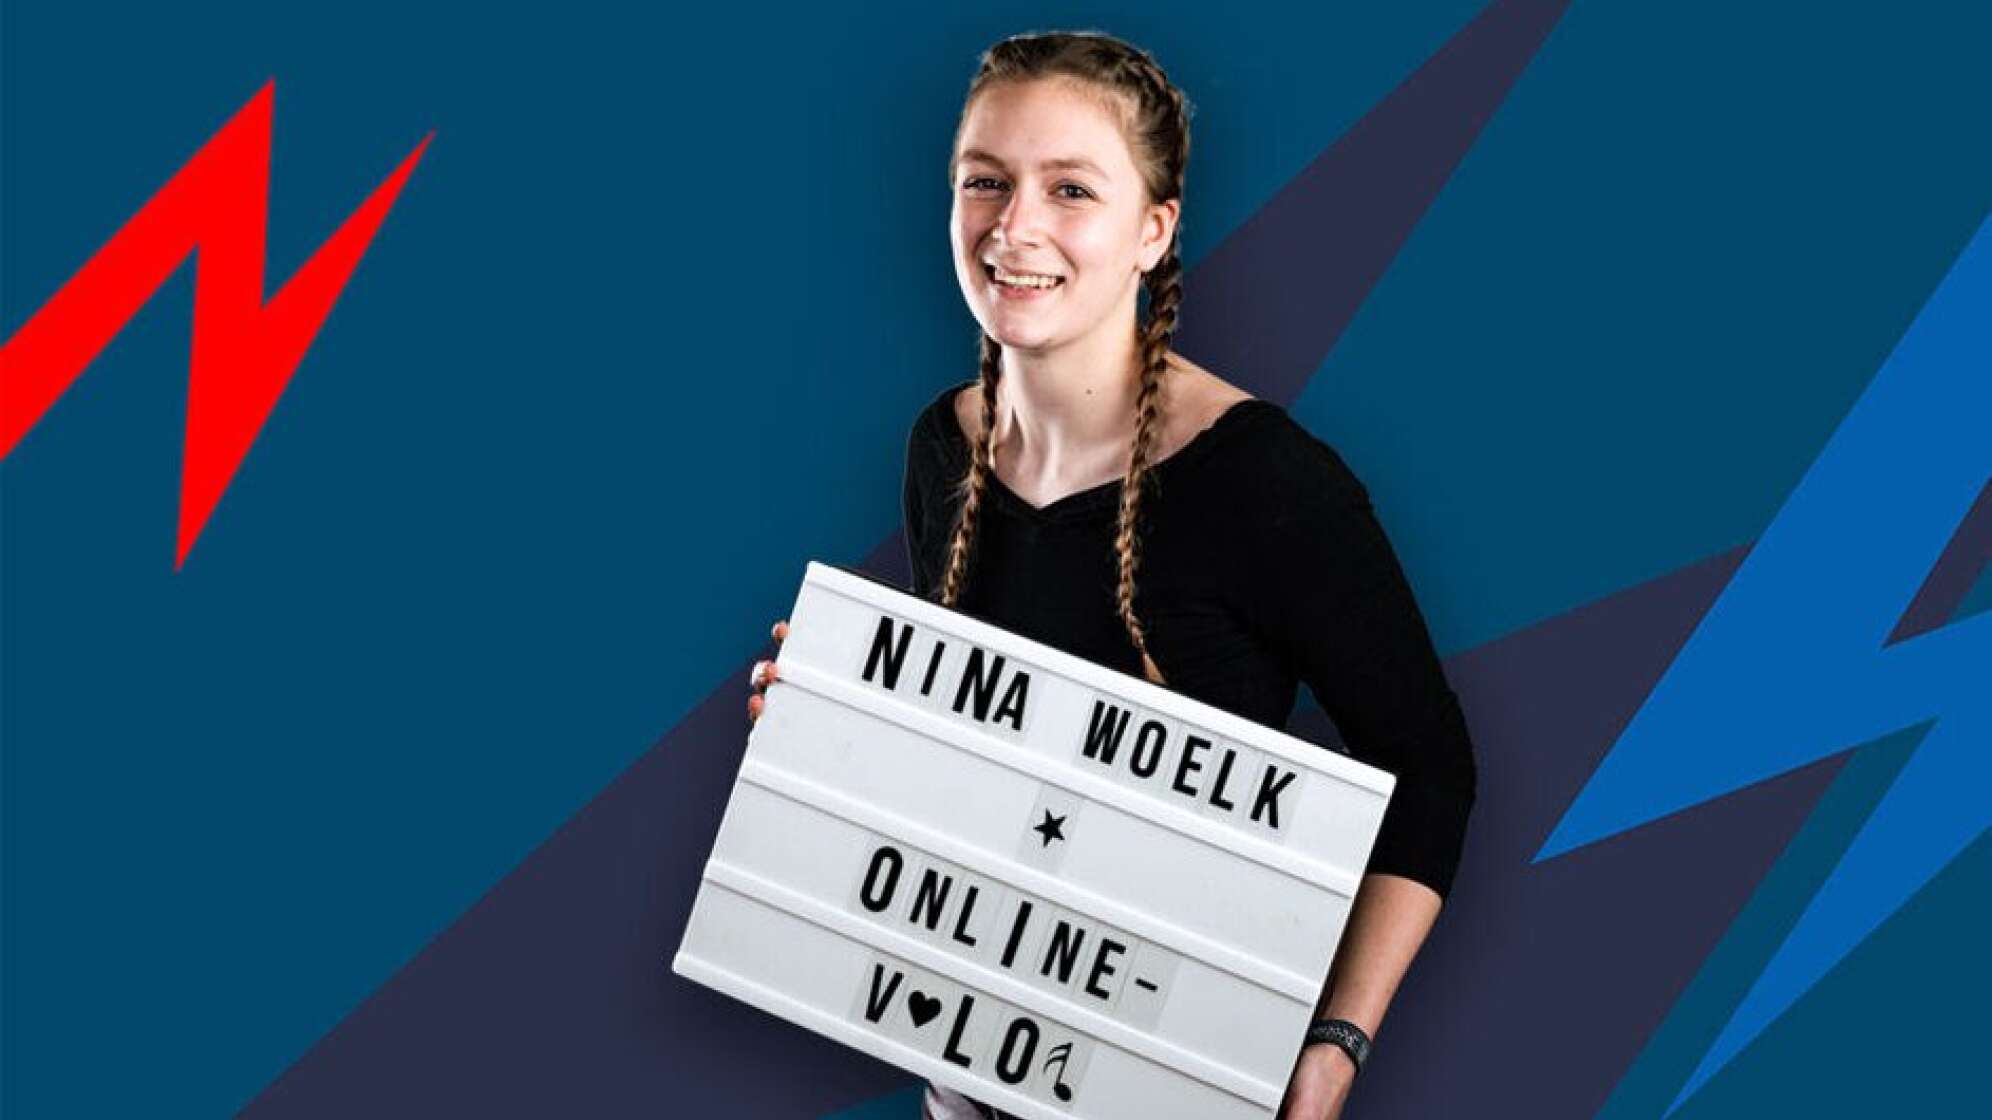 Nina Woelk